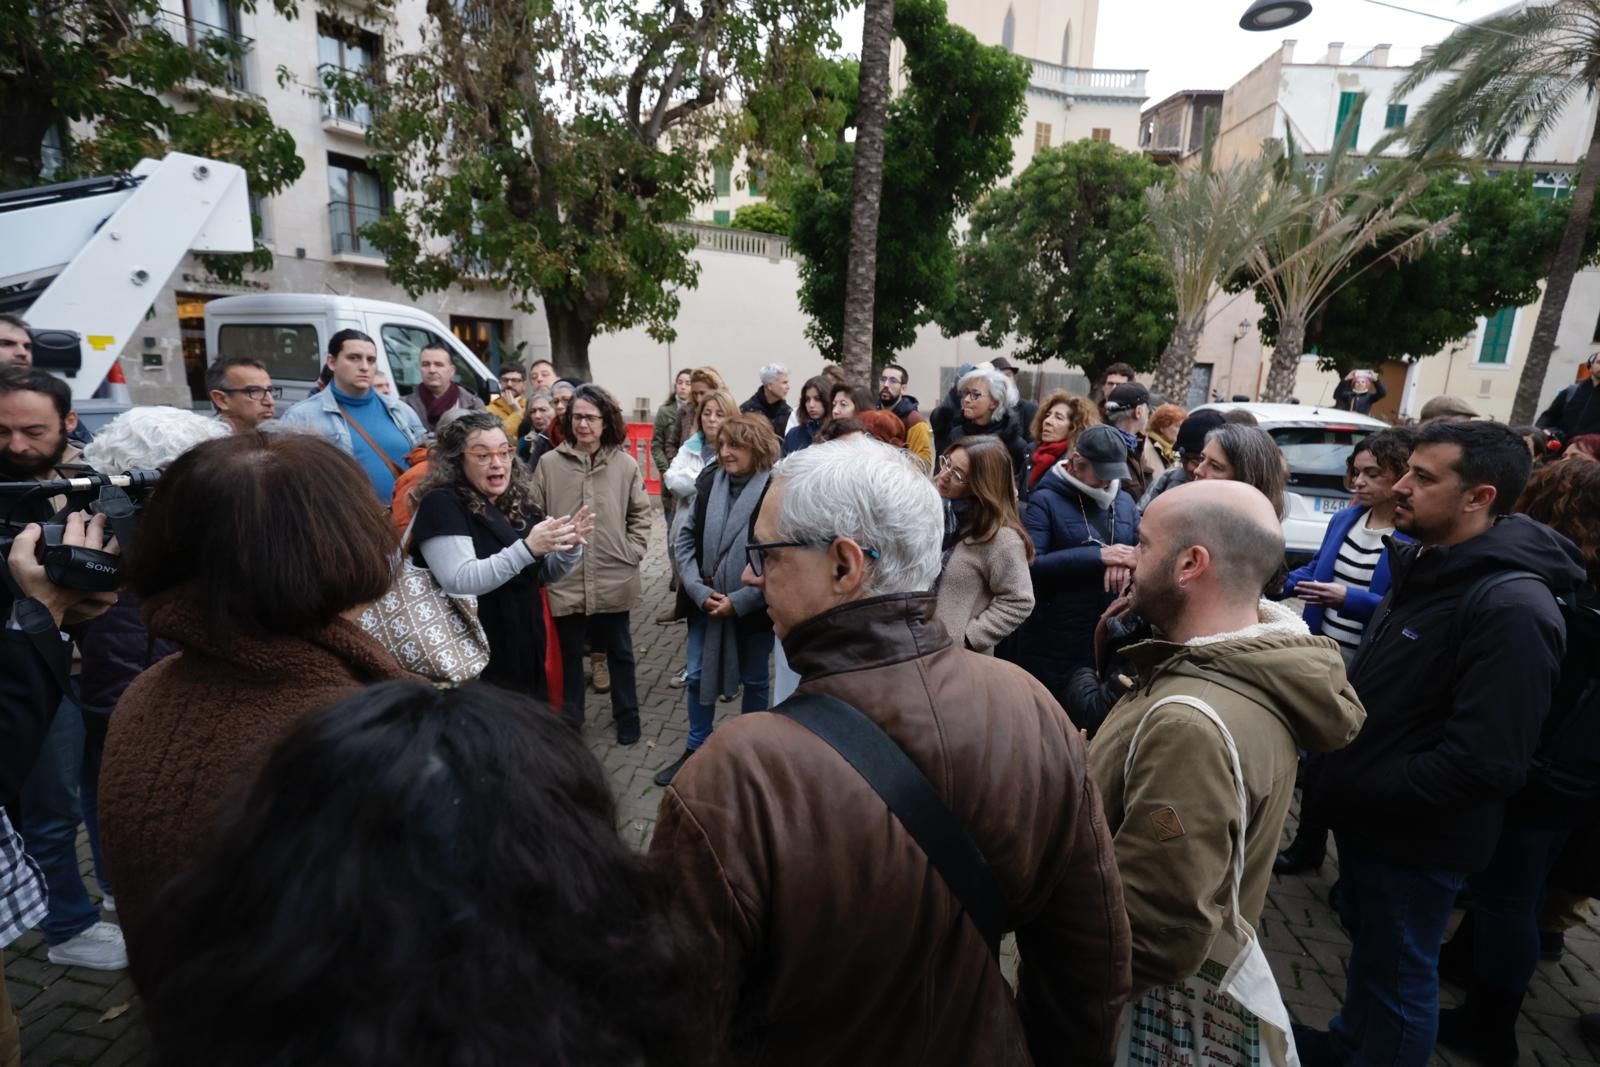 Los vecinos consiguen parar la tala de árboles en la plaza Llorenç Villalonga de Palma